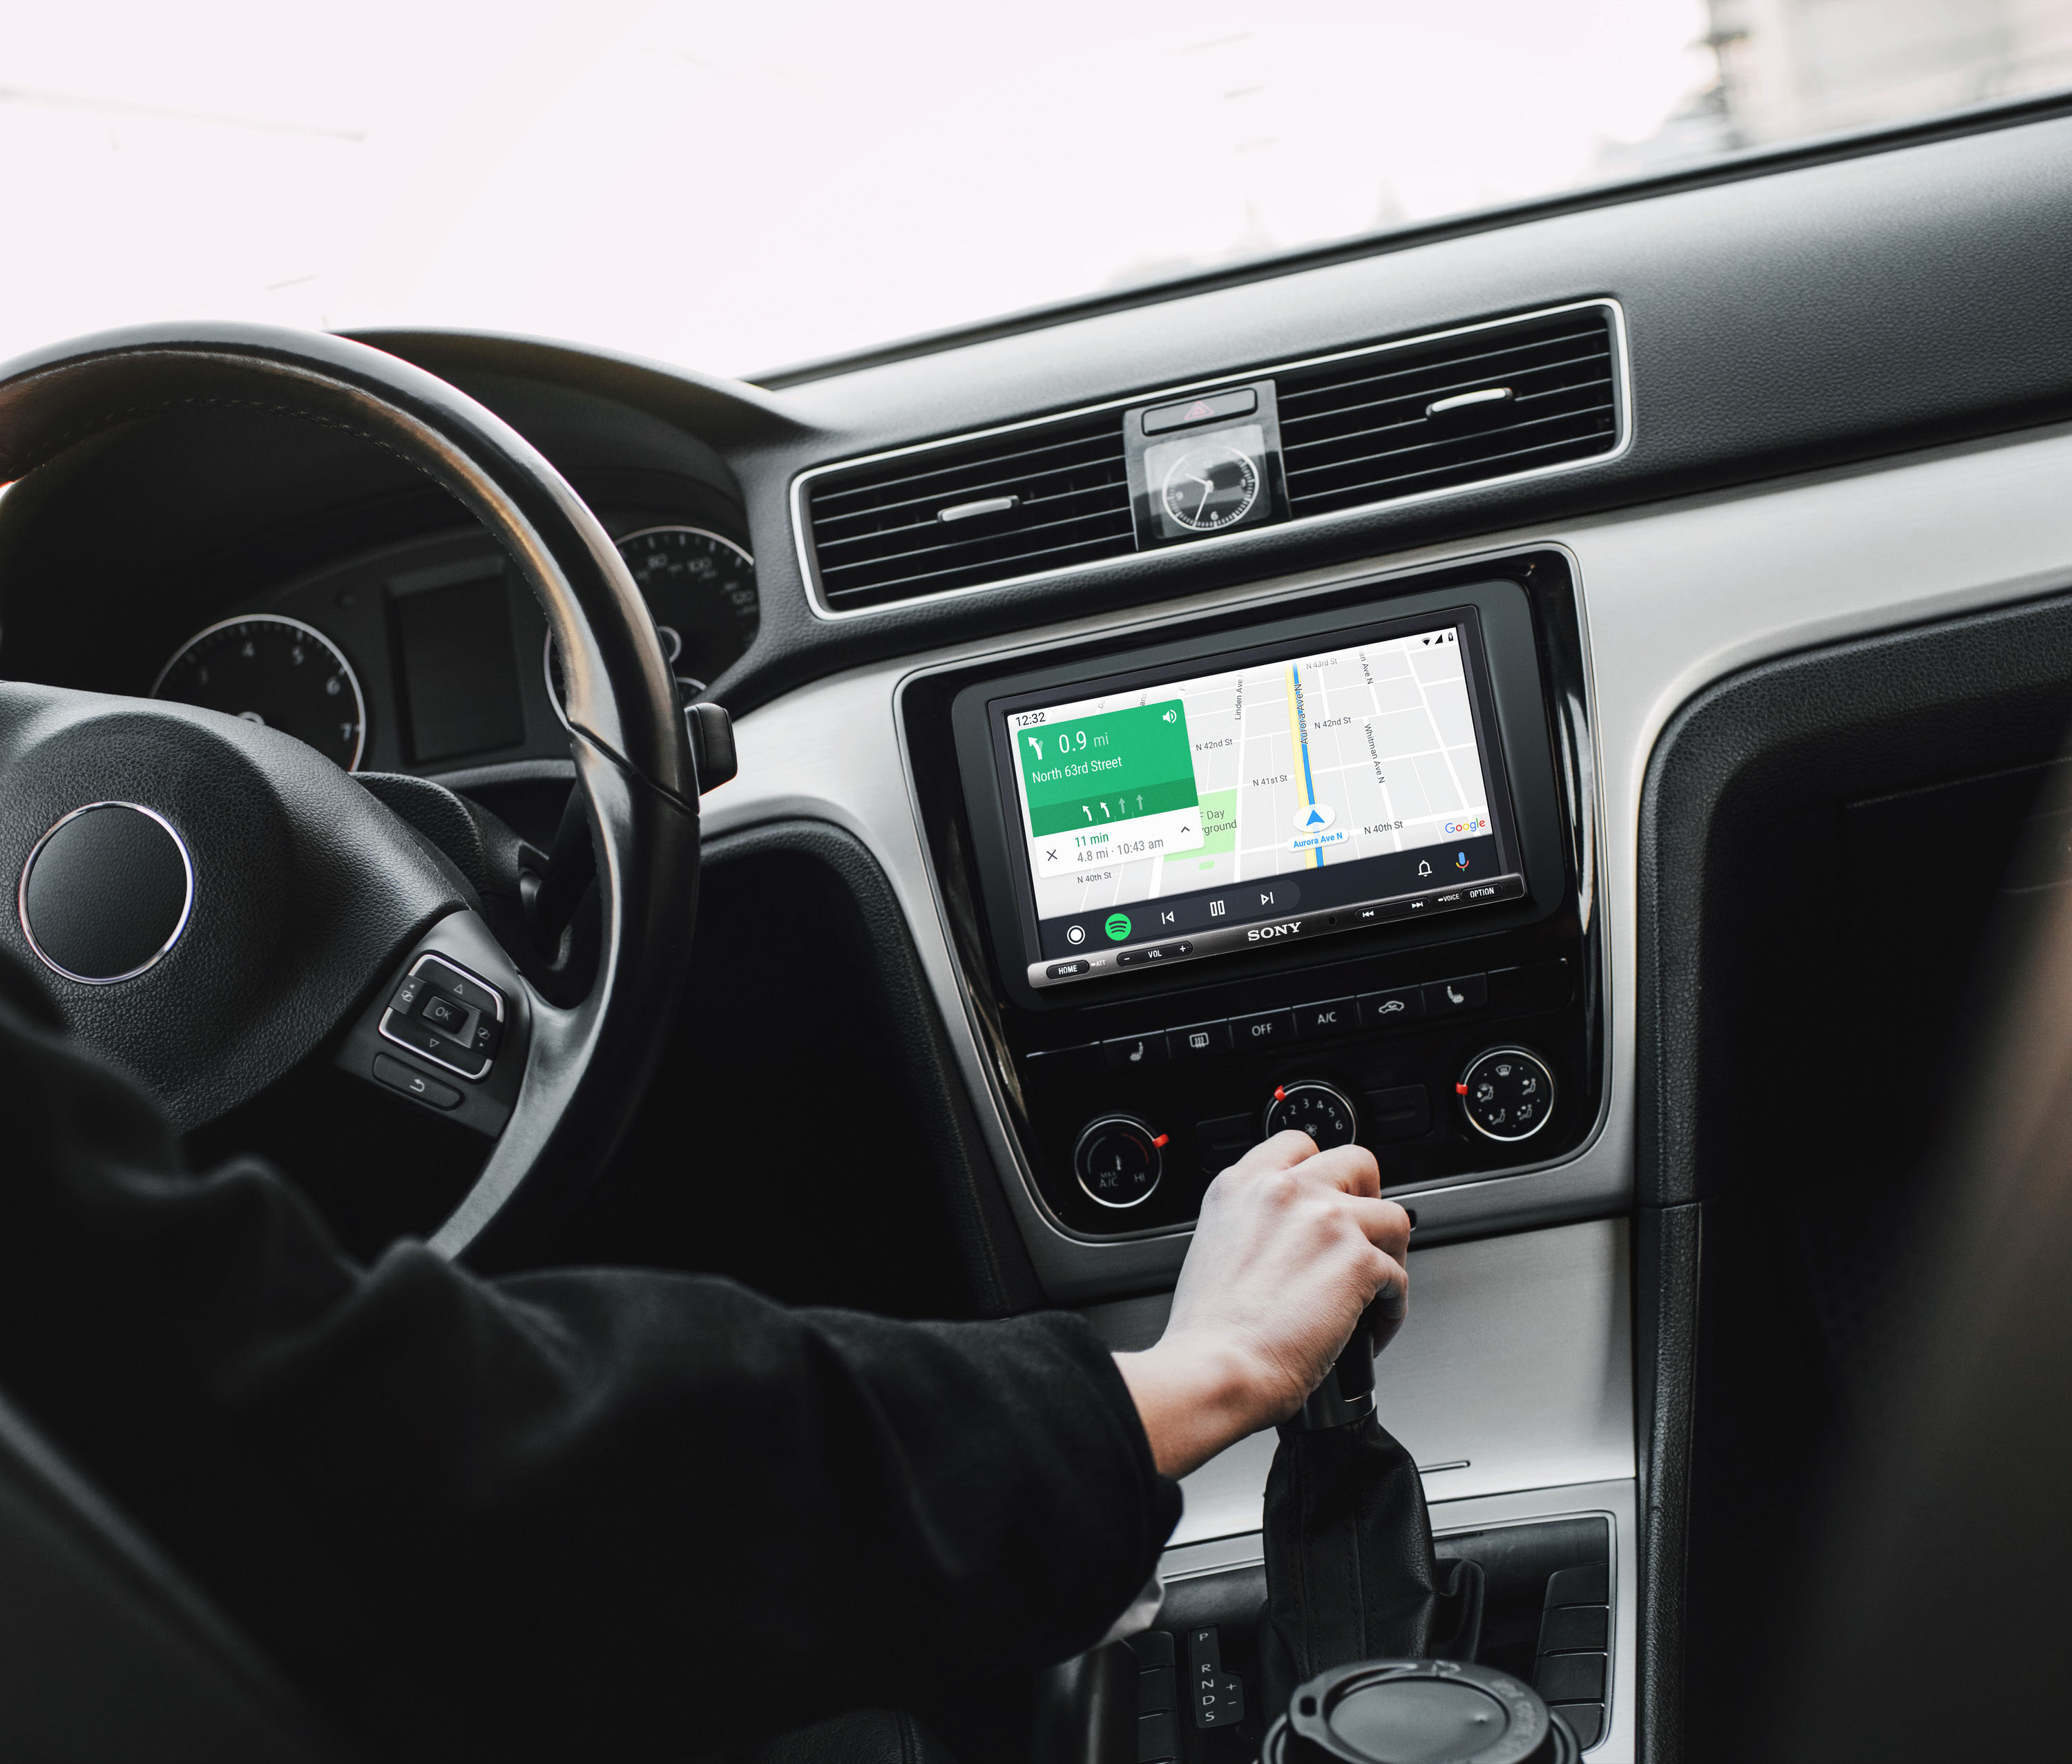 XAV-AX8150 - Autoradio 1 Din Carplay Android Auto 9 Pouces Hdmi SONY  XAV-AX8150